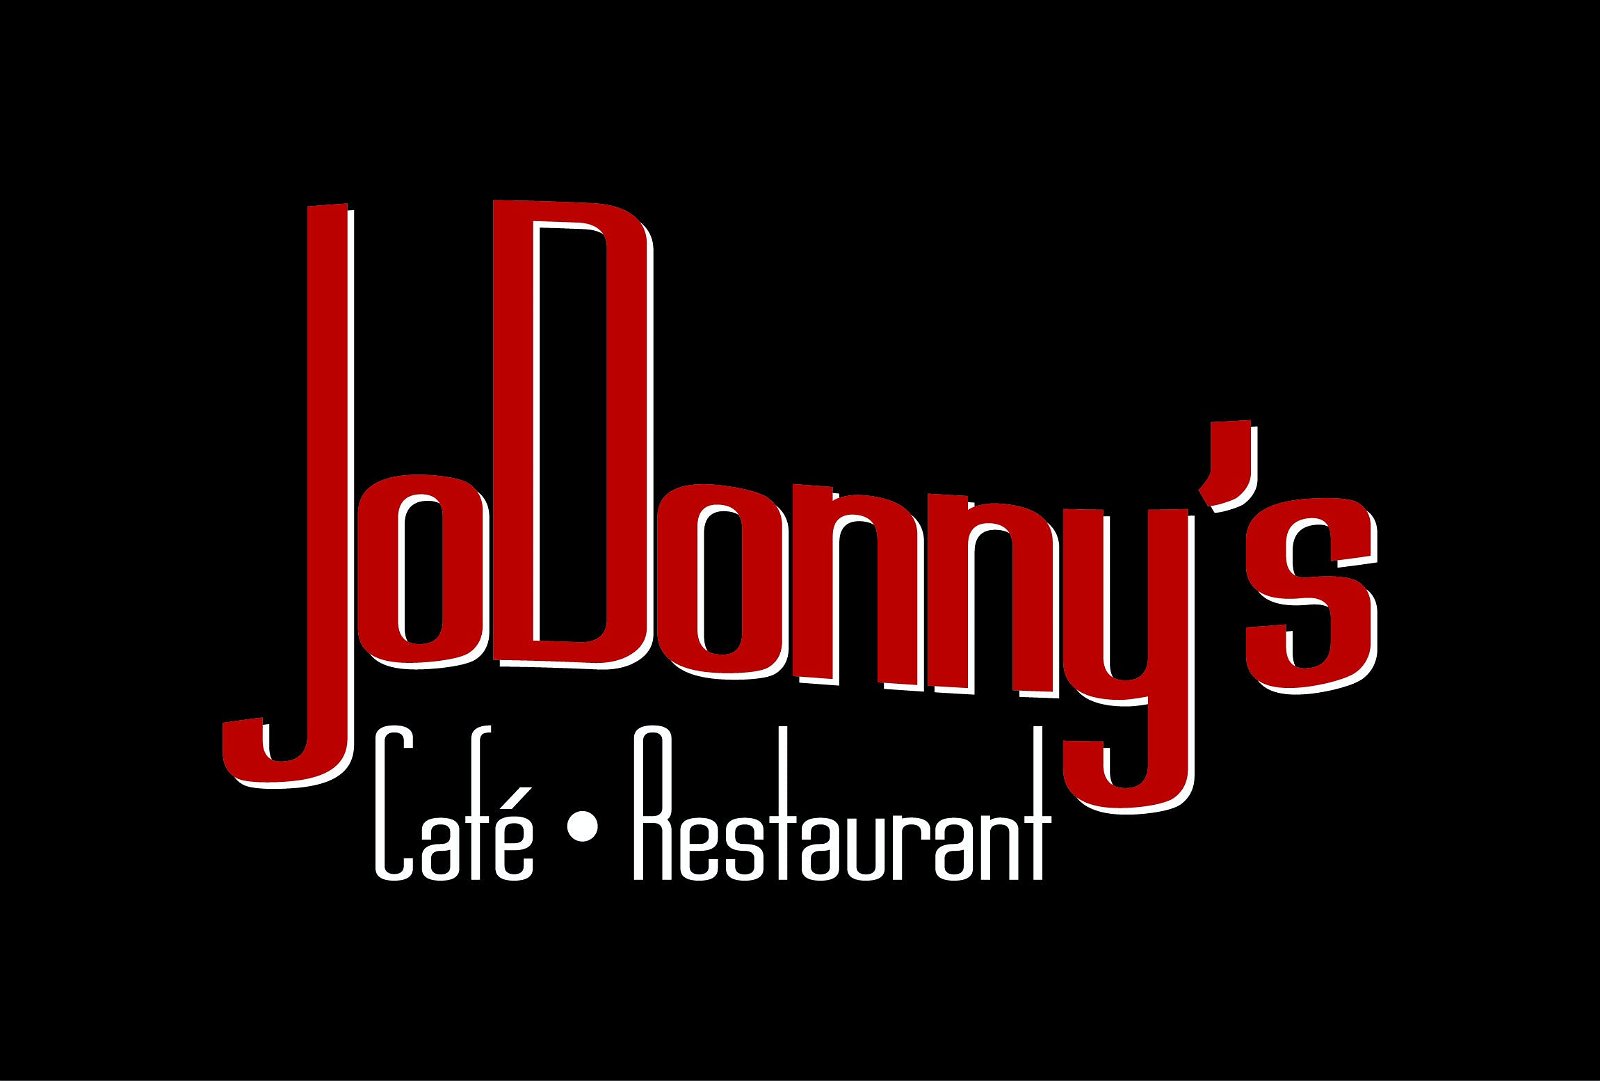 JoDonnys - Pubs Sydney